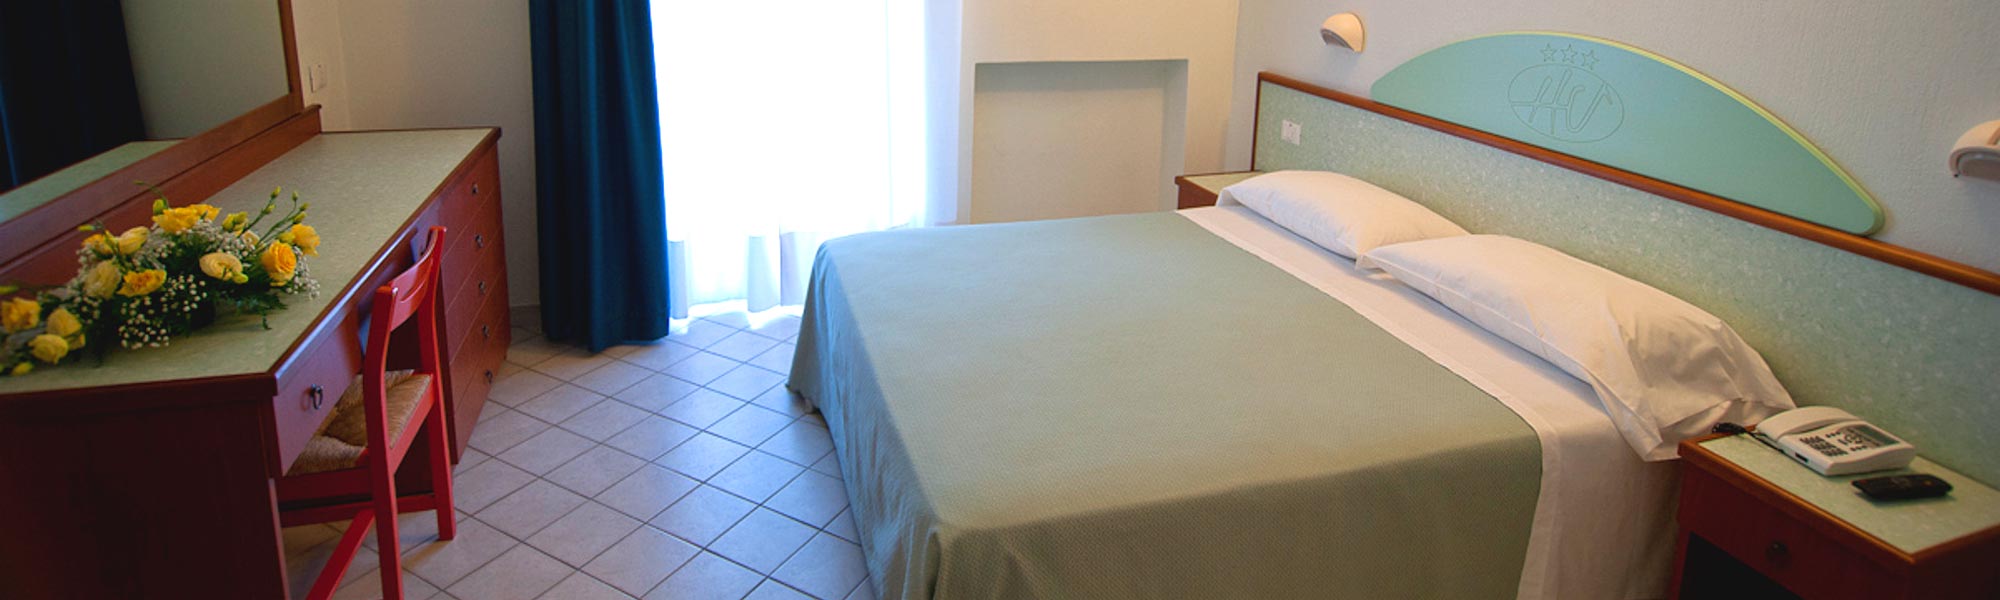 Rooms Hotel Soverato, Italy